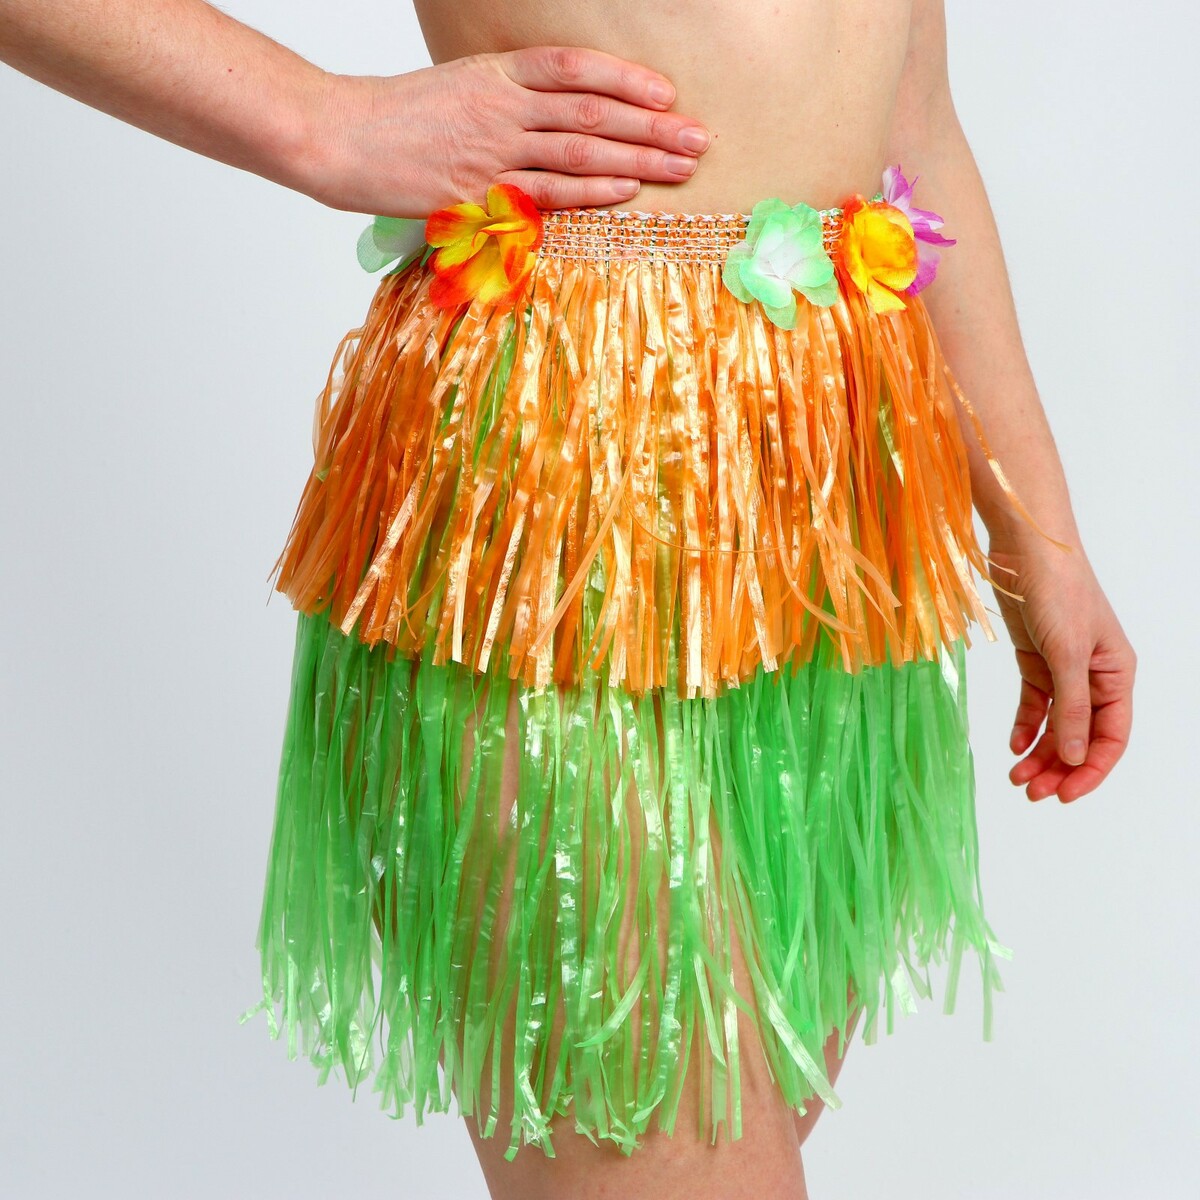 Гавайская юбка, 40 см, двухцветная оранжево-зеленая полусфера массажно балансировочная original fit tools ft msd 2gn 2 шт зеленая